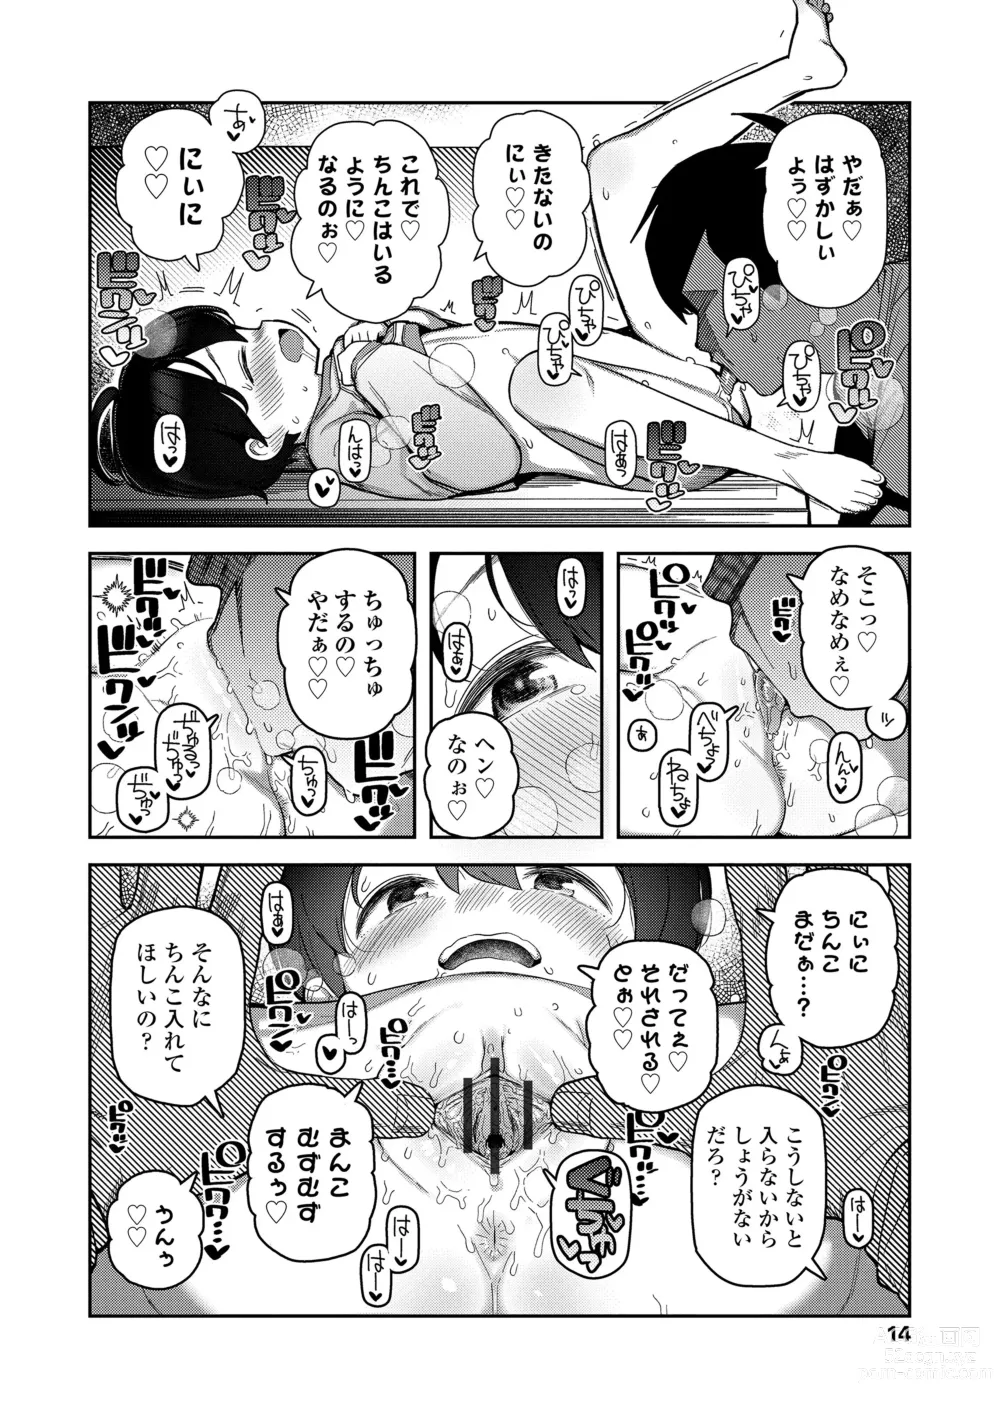 Page 14 of manga Chitchakute ohisama no nioi